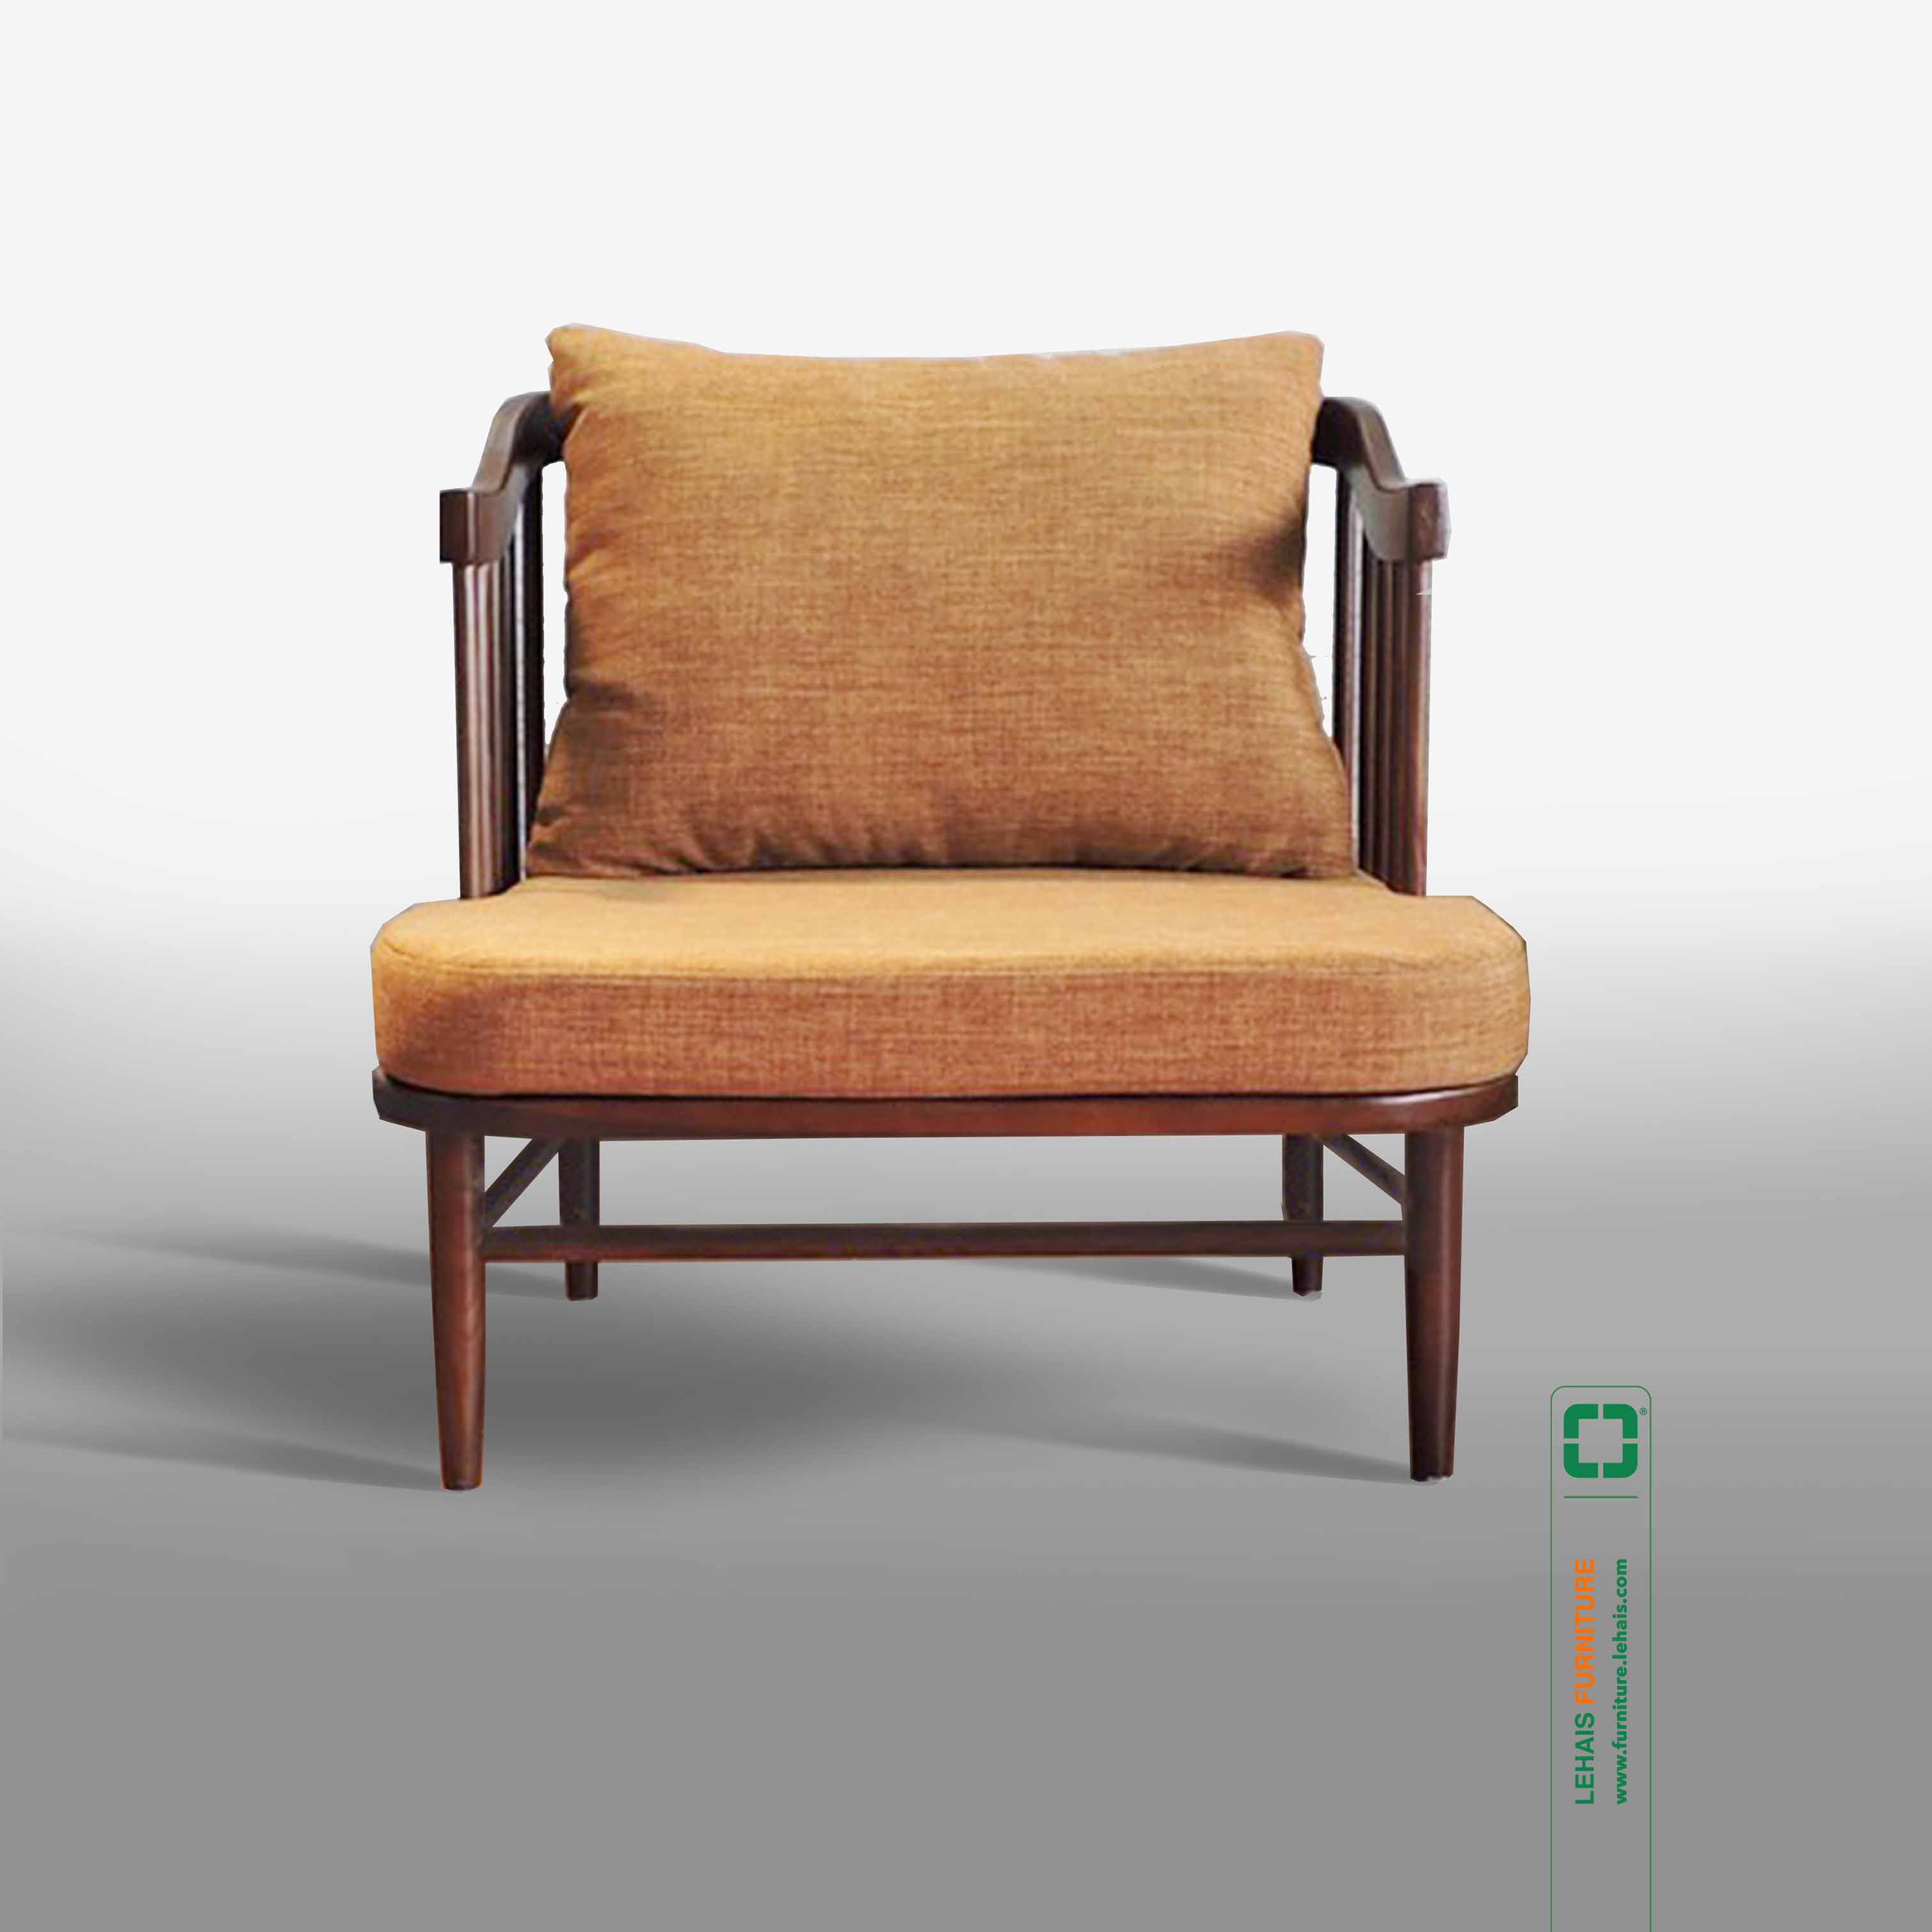 Cube chair - G60LHFU